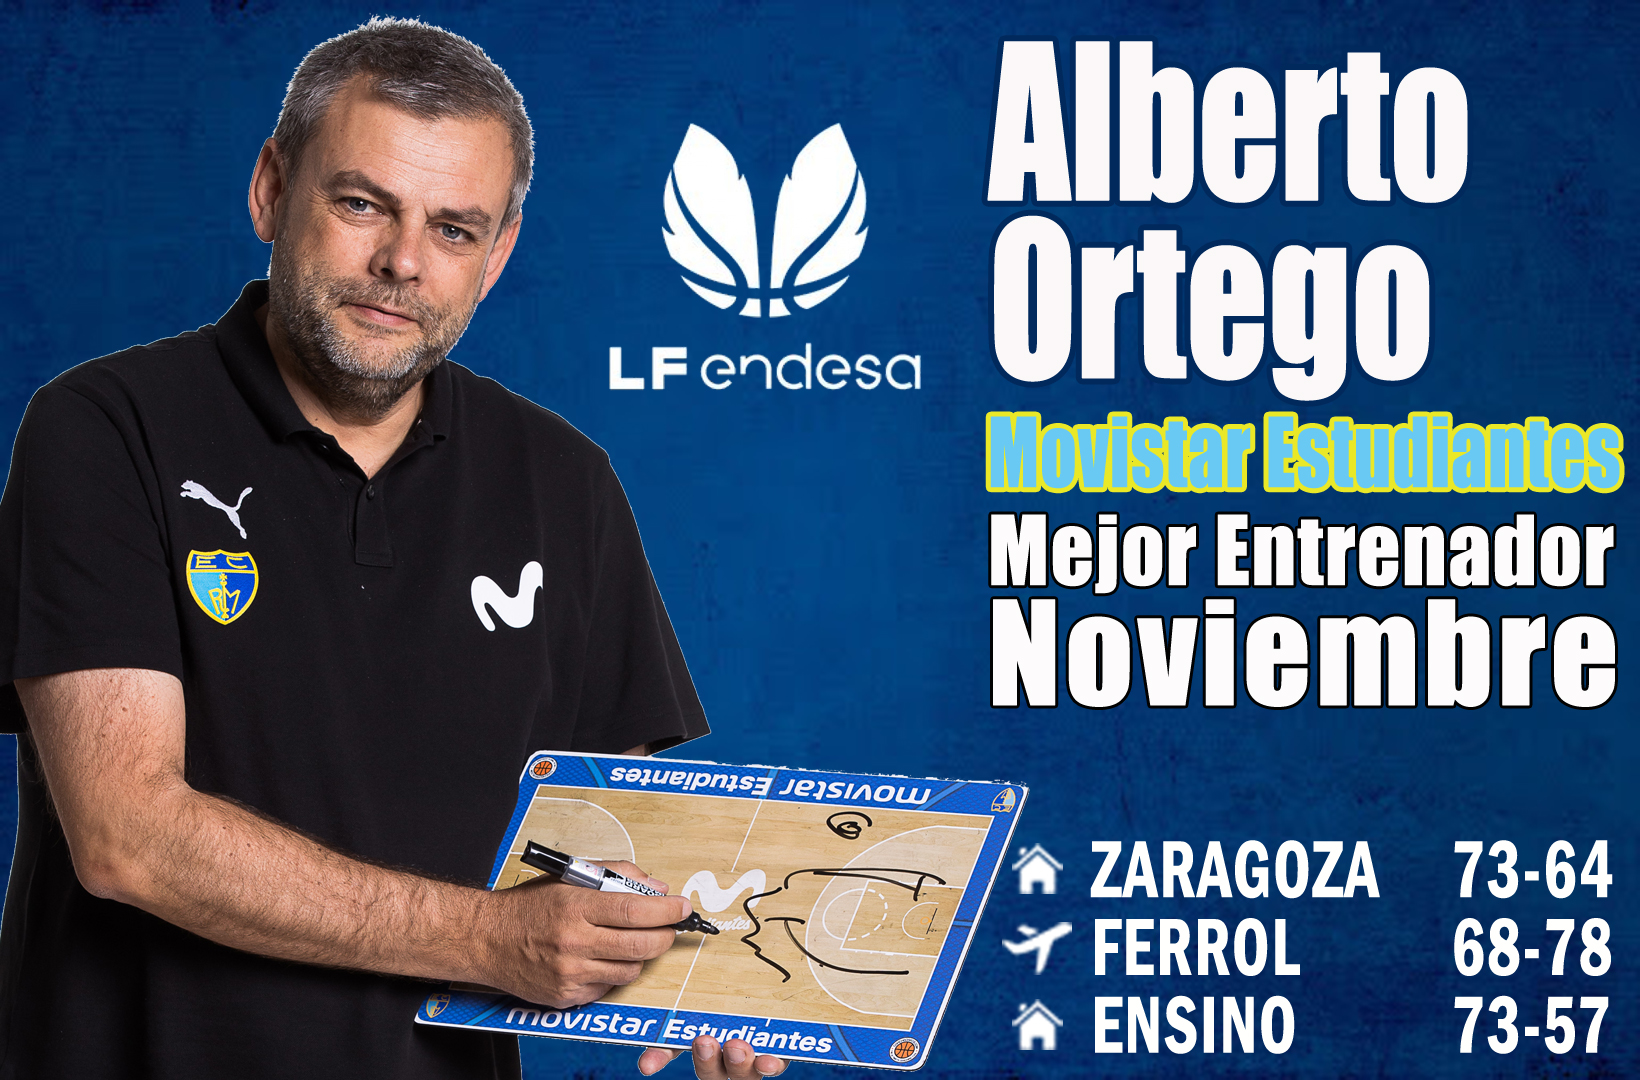 Alberto Ortego Mejor Entrenador de la LF Endesa del Mes de Noviembre-Trofeo AEEB